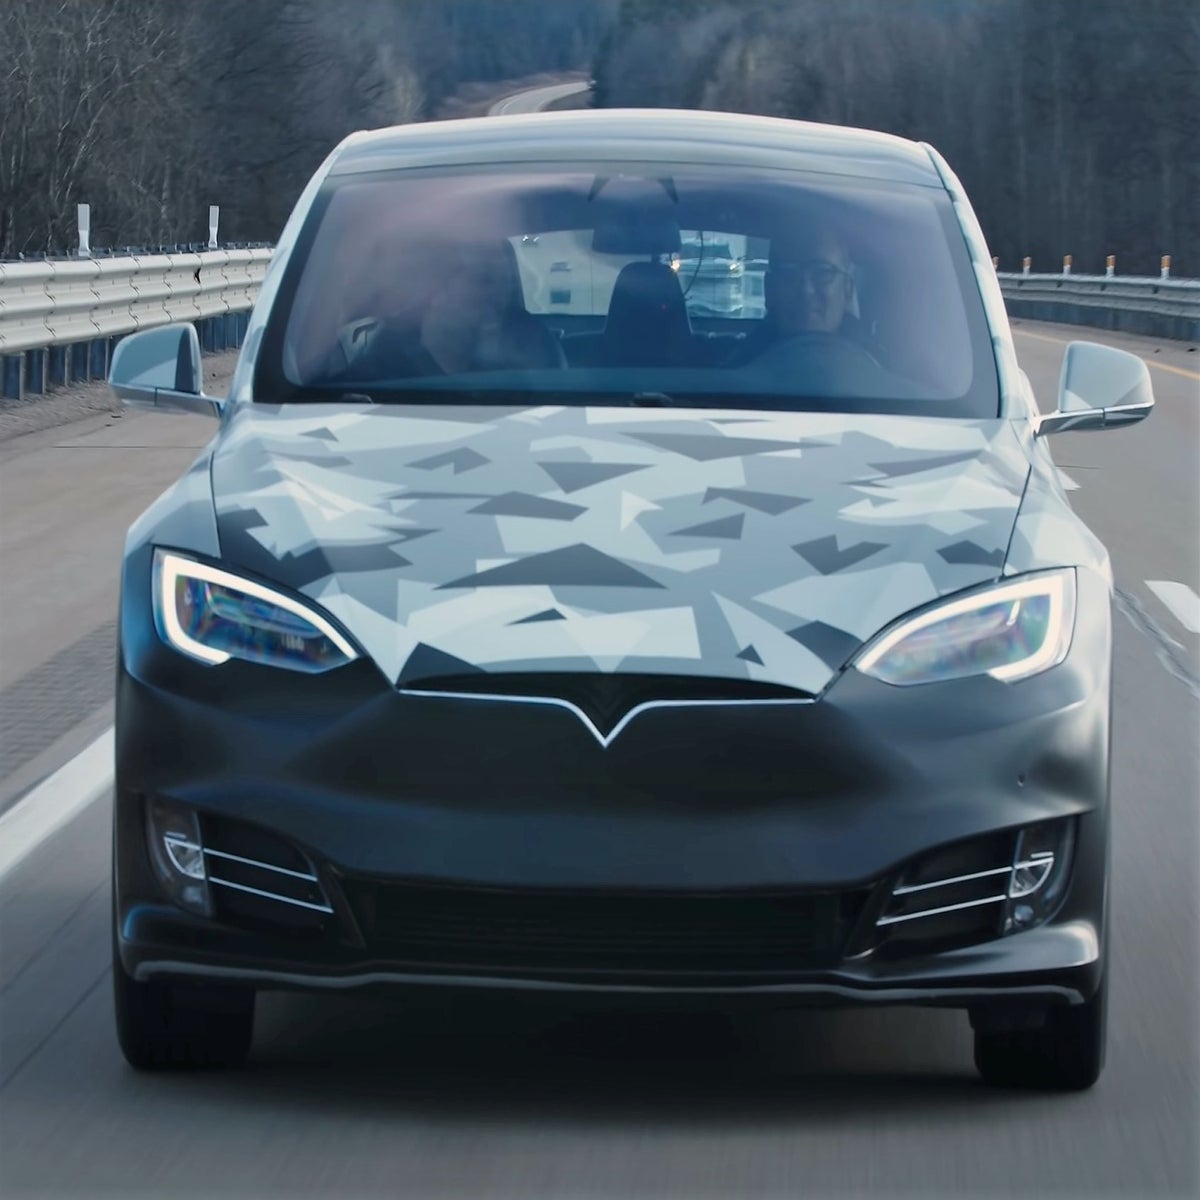 Componeren Geavanceerd noedels Un Tesla recorre 750 millas con una sola carga gracias a su revolucionaria  batería | Independent Español